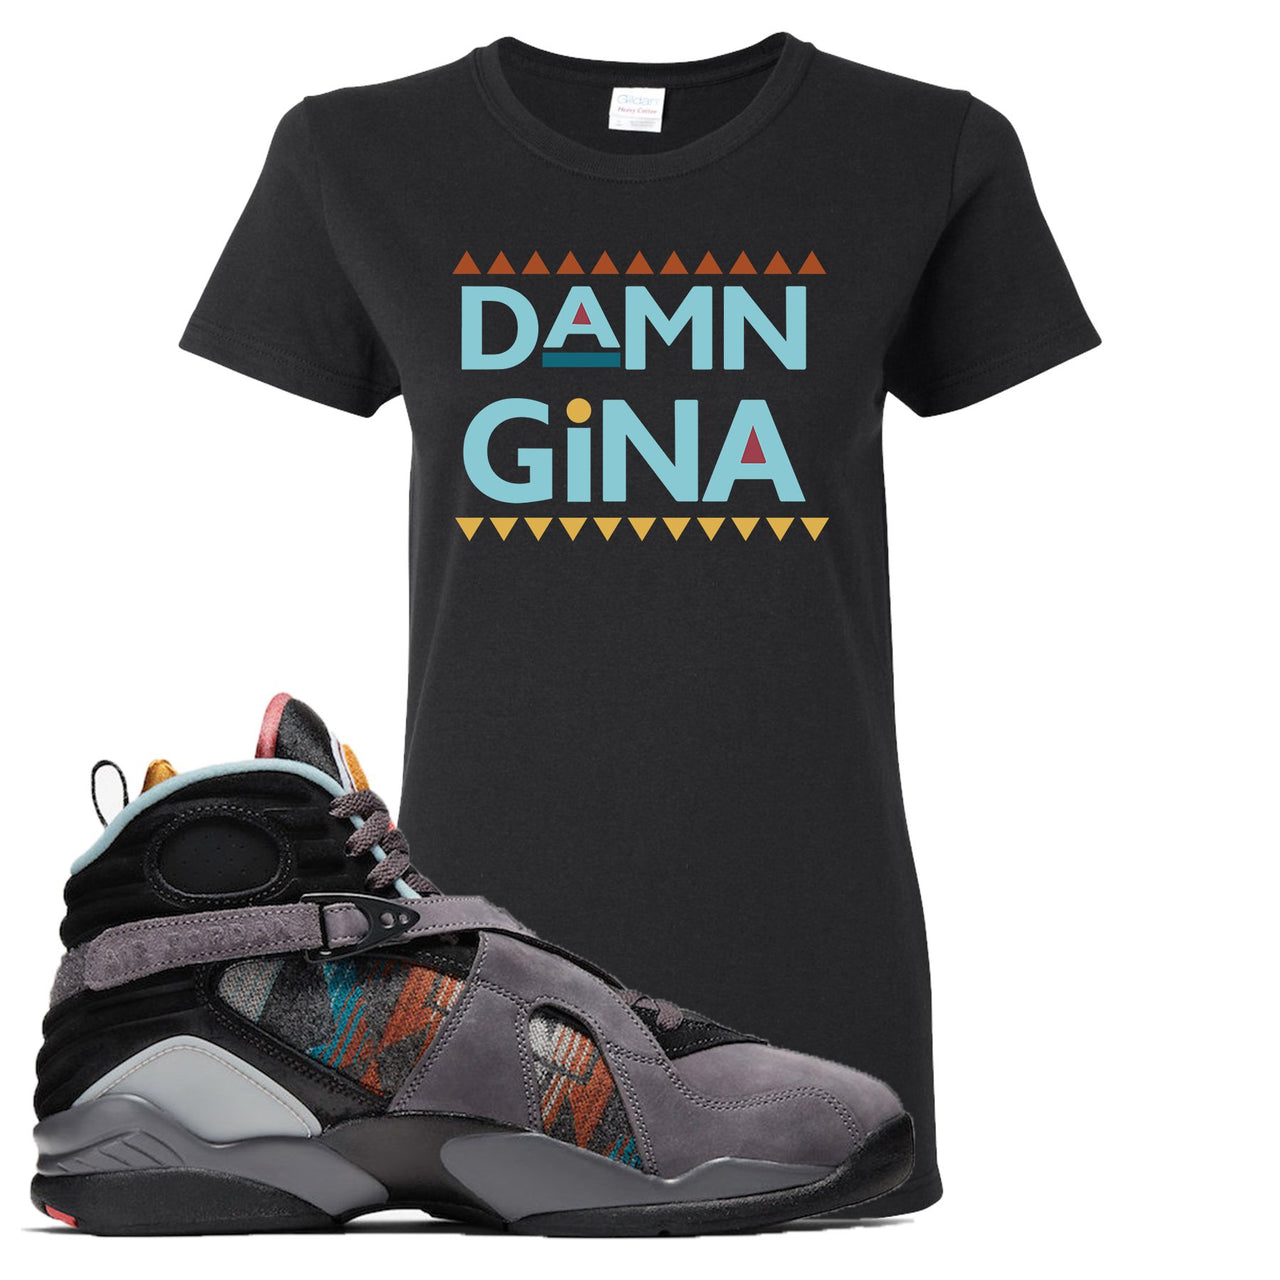 Jordan 8 N7 Pendleton Damn Gina Black Sneaker Hook Up Women's T-Shirt